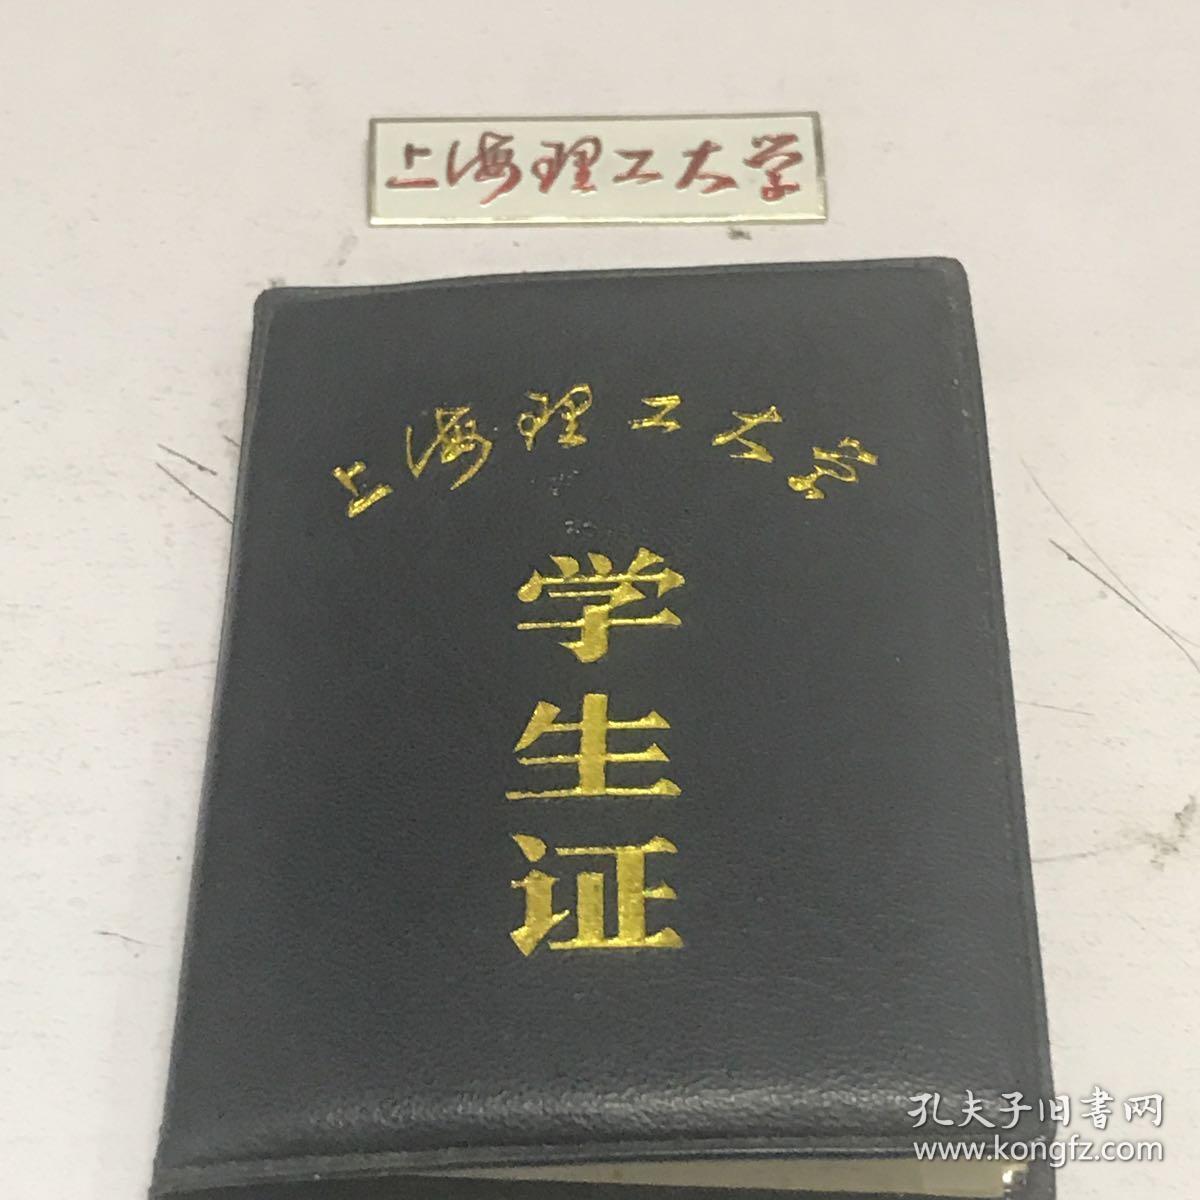 上海理工大学学生证和上海理工大学徽章九品房区